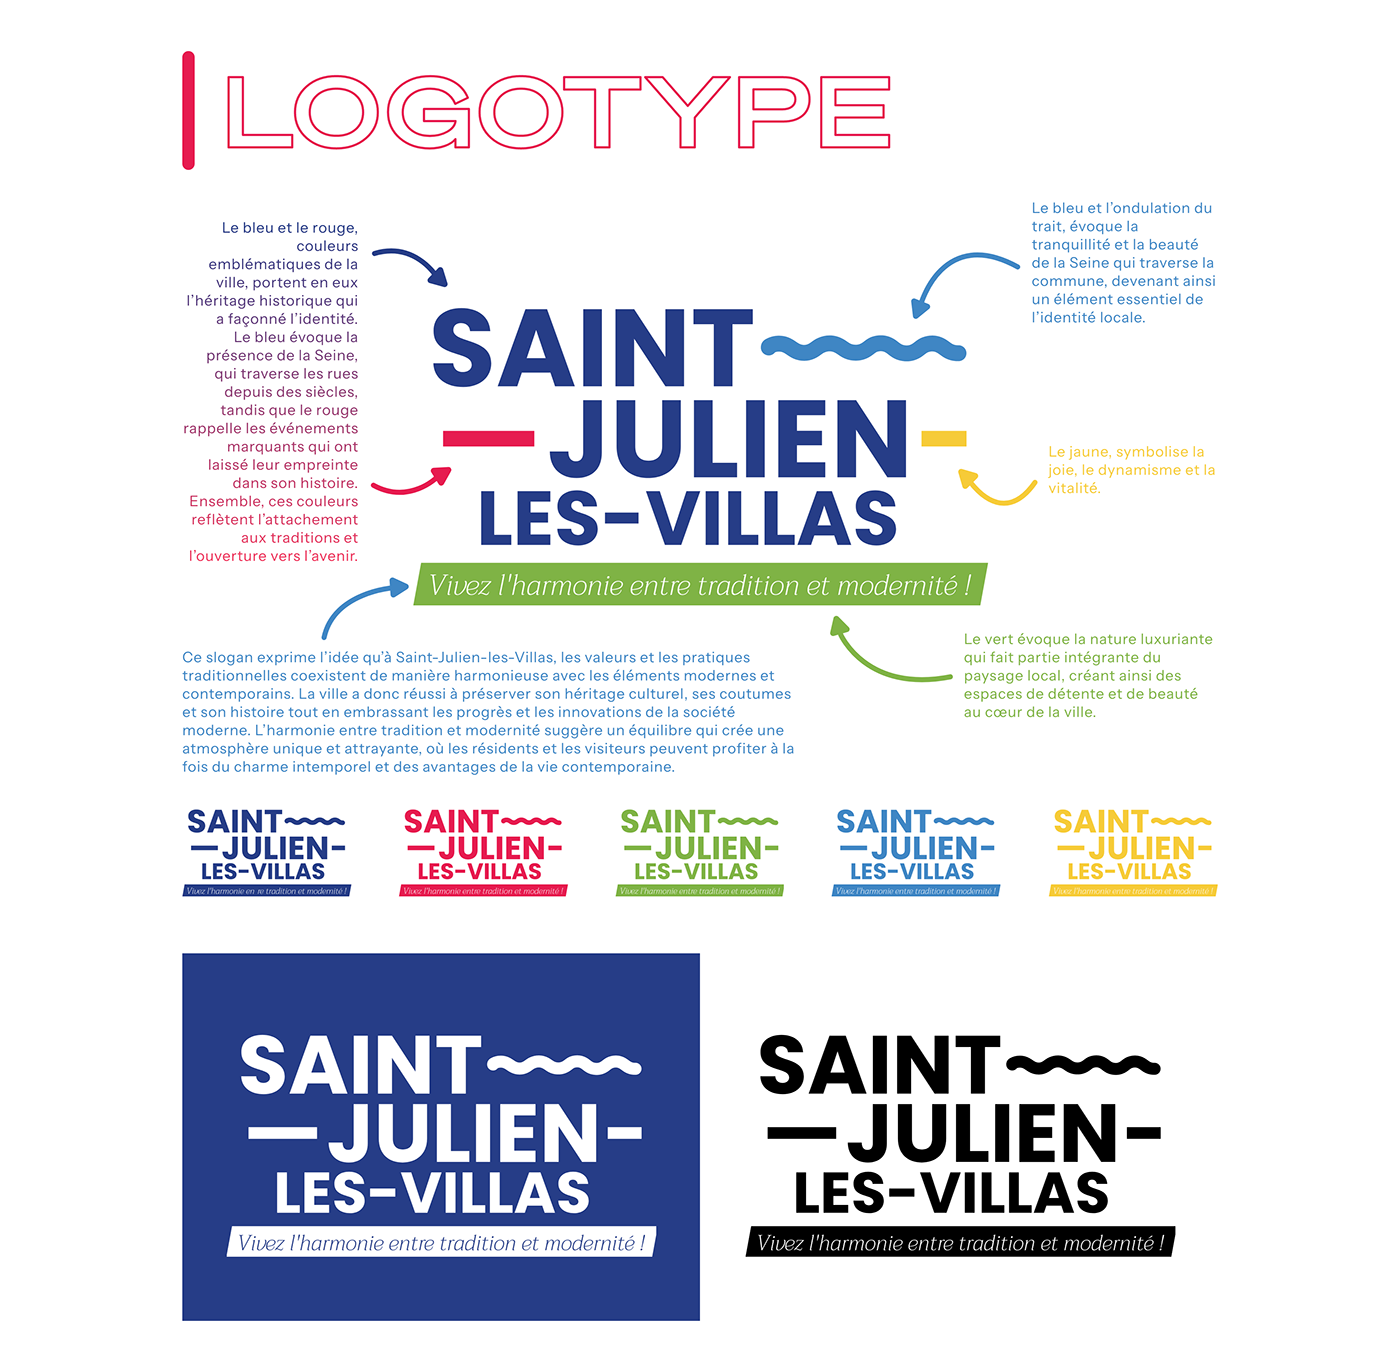 Mairie brand identity application charte graphique digital Logotype branding  saint julien les villas city ville